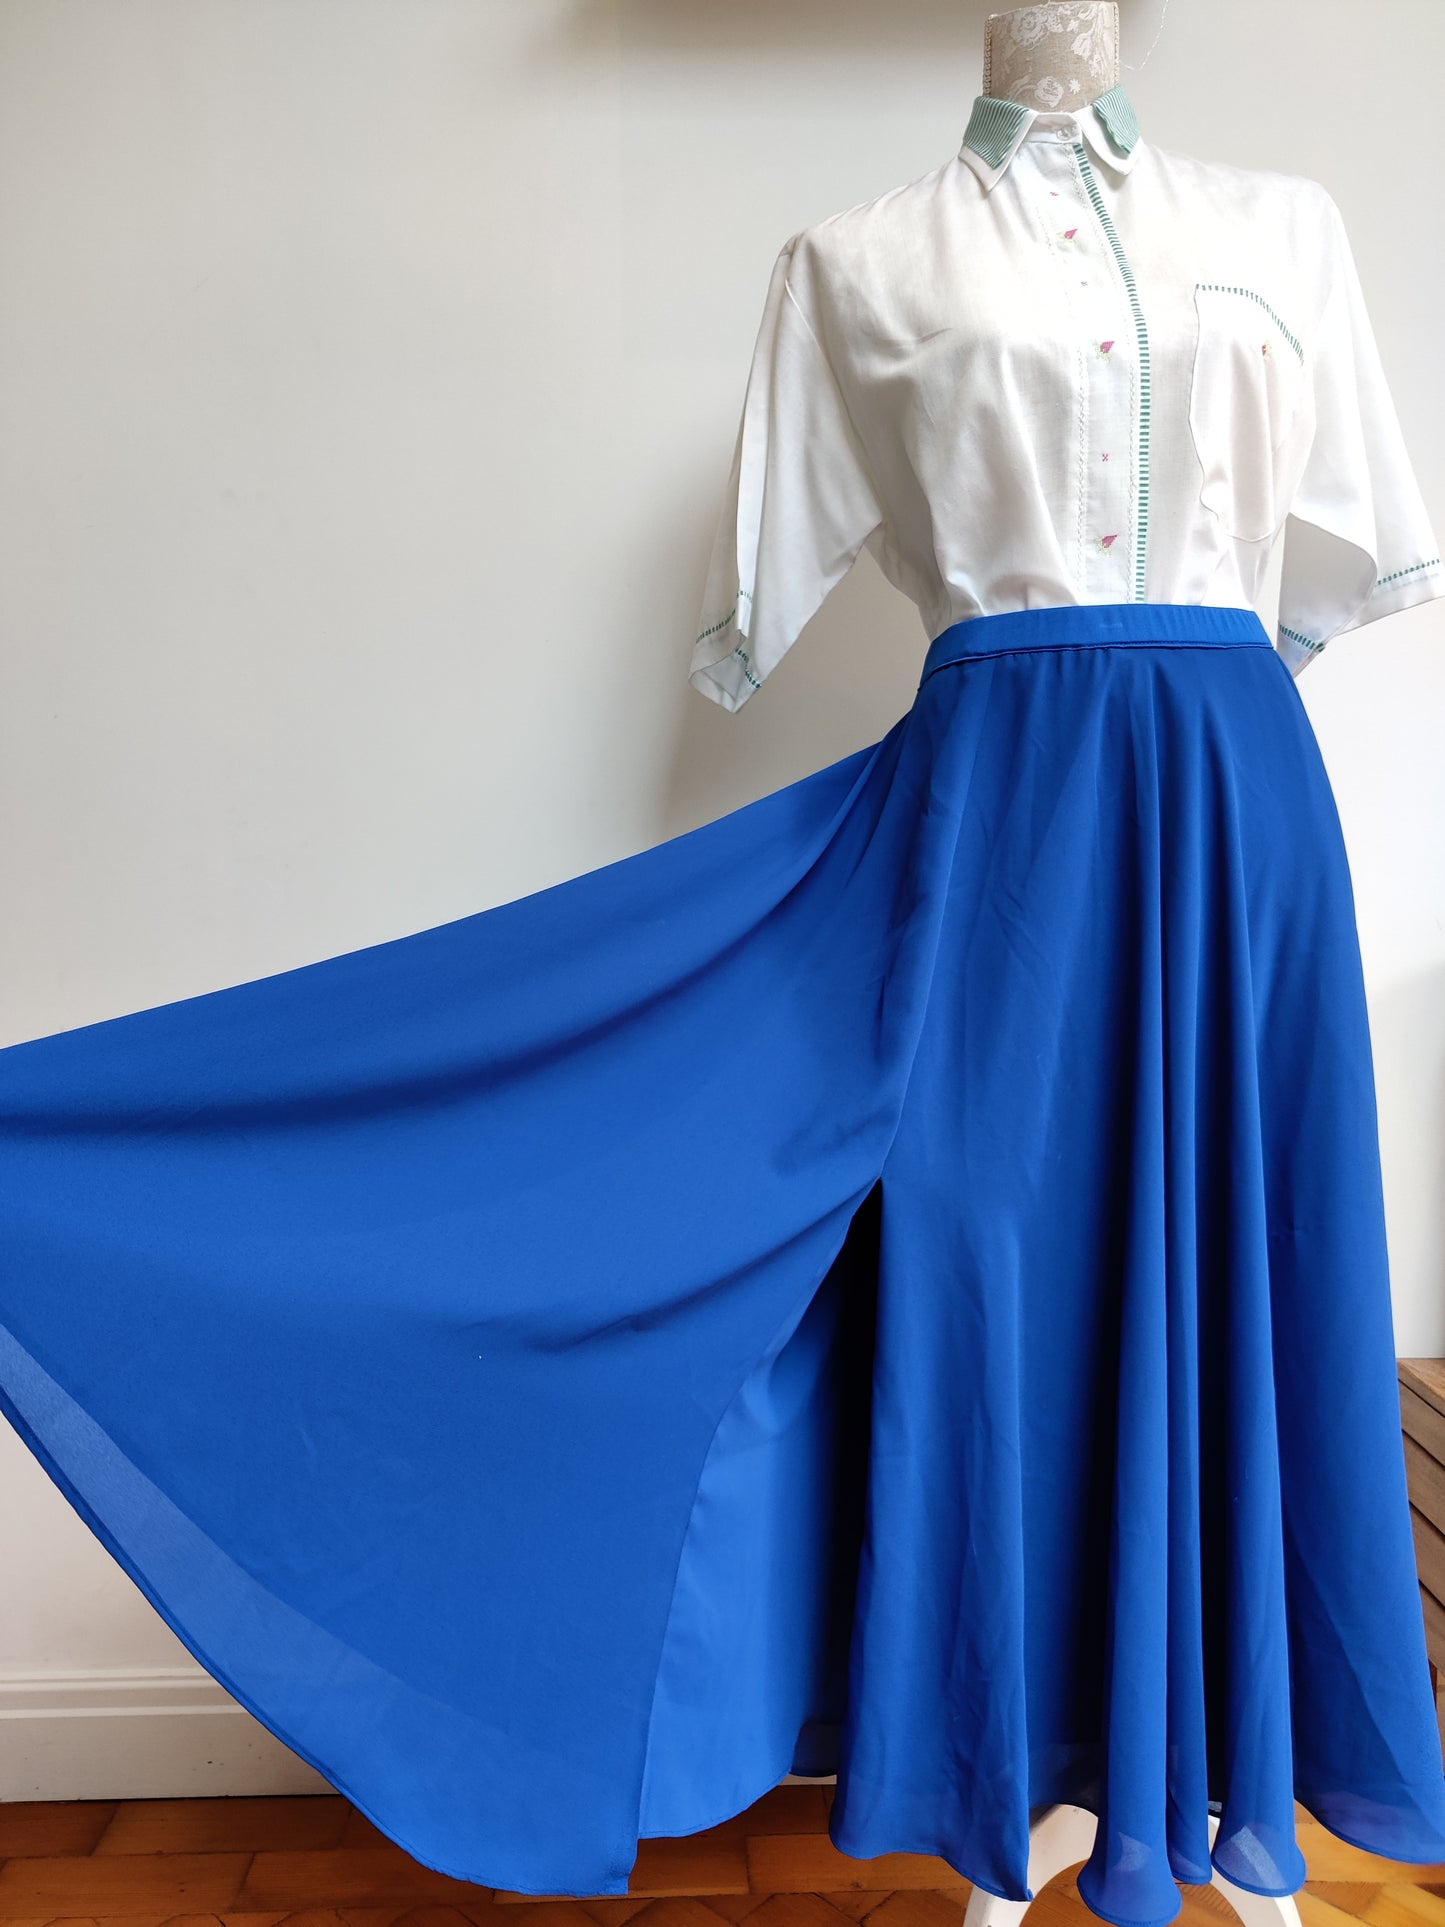 Blue full skirt size 14-18